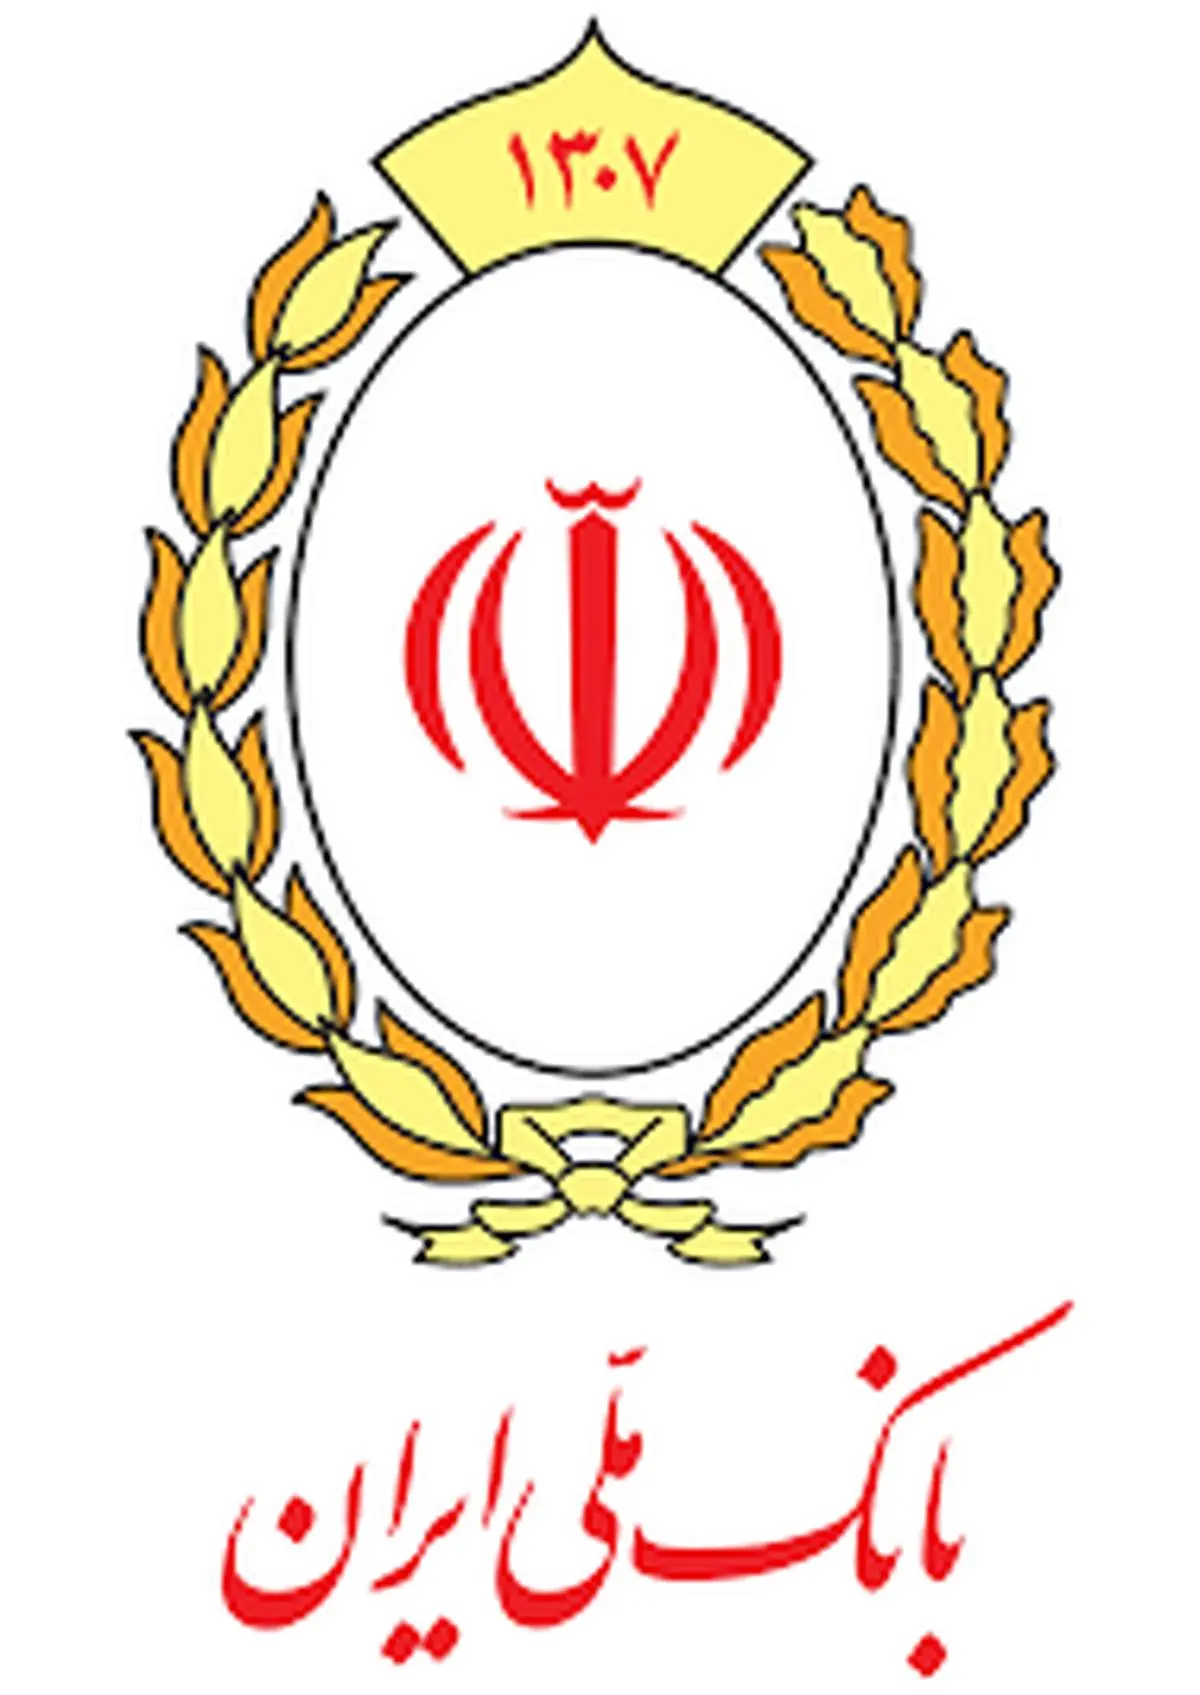 نقش آفرینی بانک ملی ایران در توسعه زنجیره ارزش صنعت کاشی و سرامیک کشور

